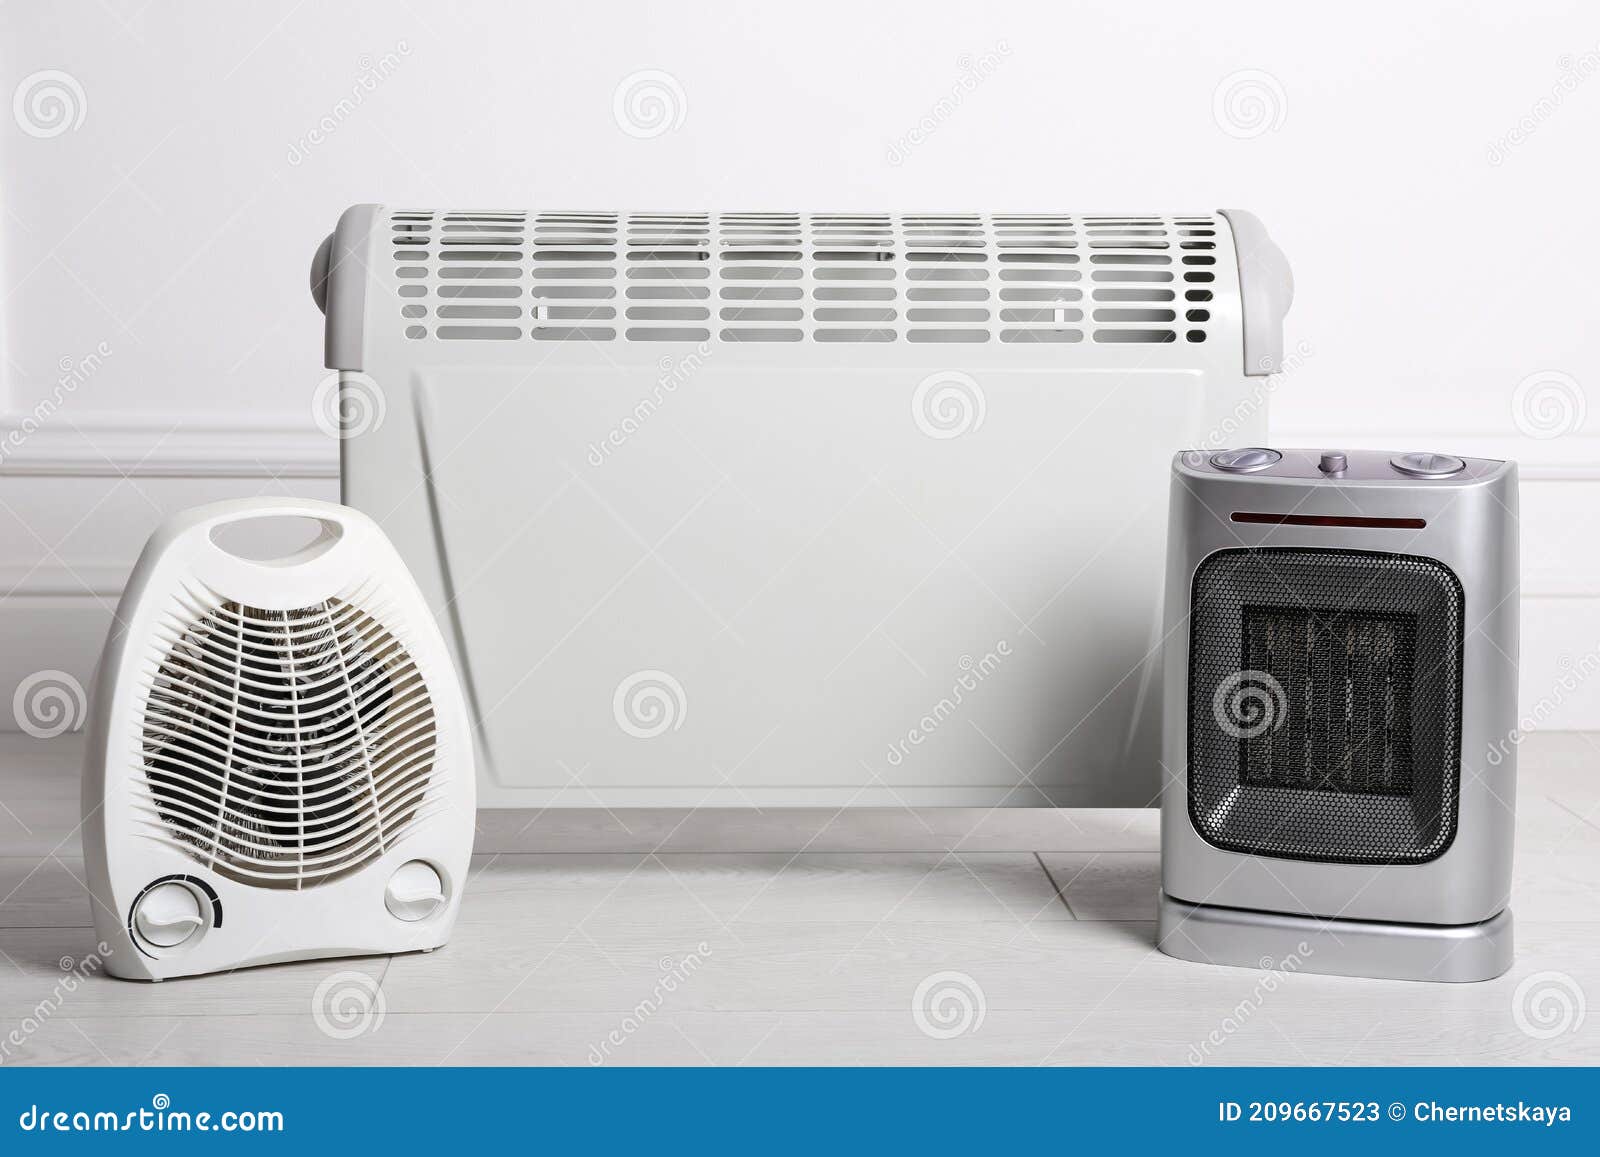 Tres Calefactores Eléctricos Diferentes En El Piso En La Habitación Imagen  de archivo - Imagen de ventilador, aire: 209667523